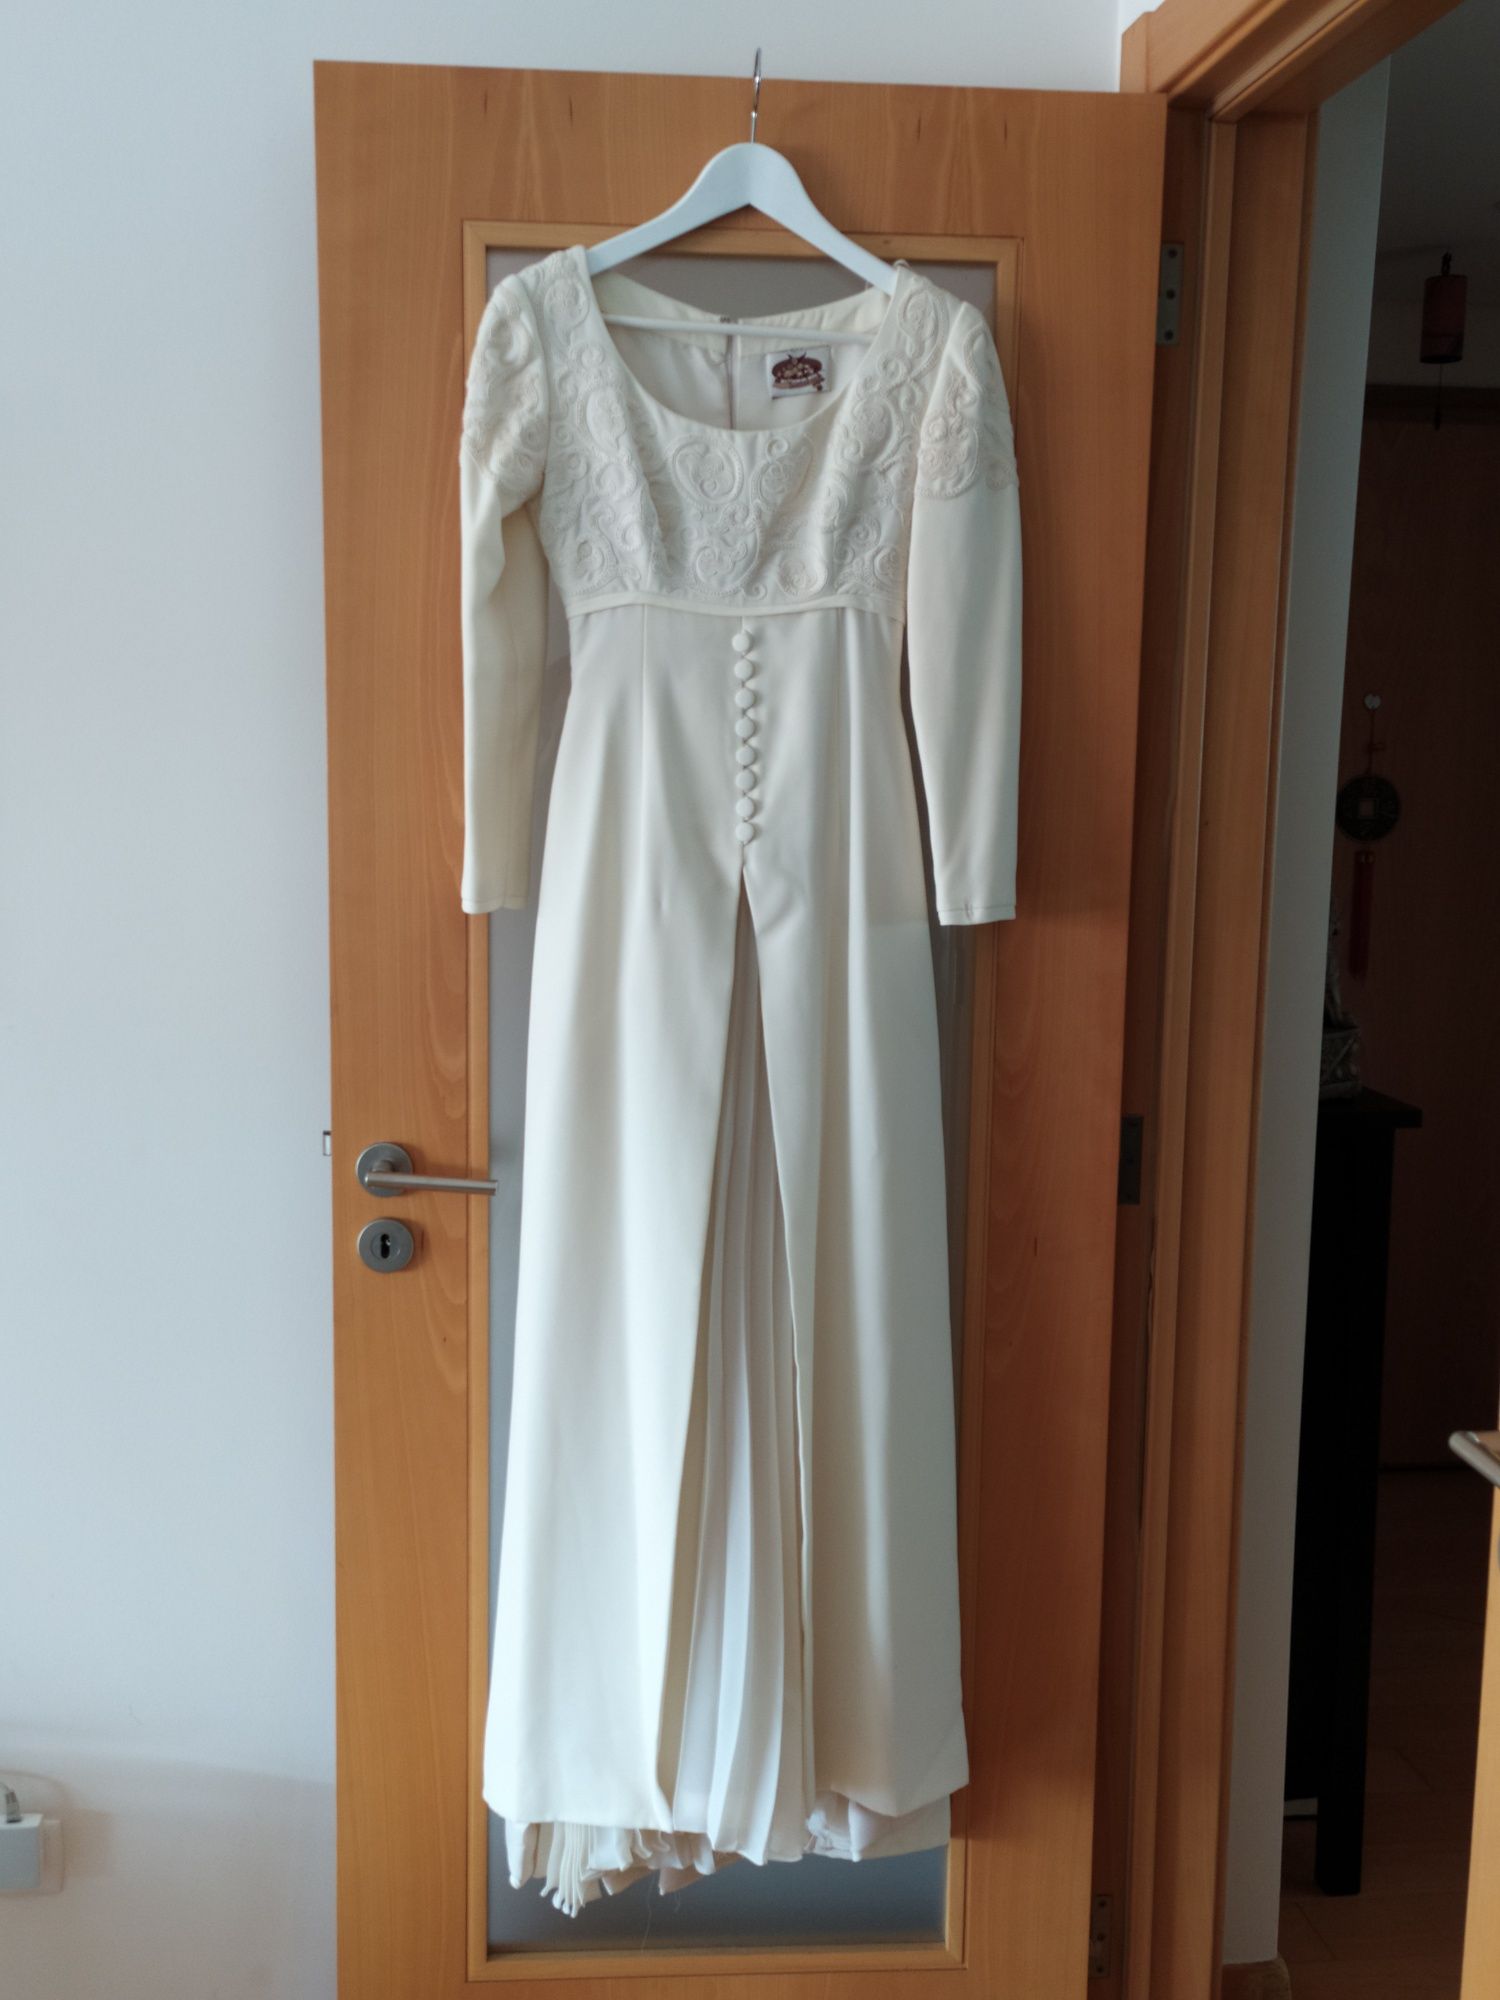 Vestido de noiva cor marfim, marca Rosa Clará